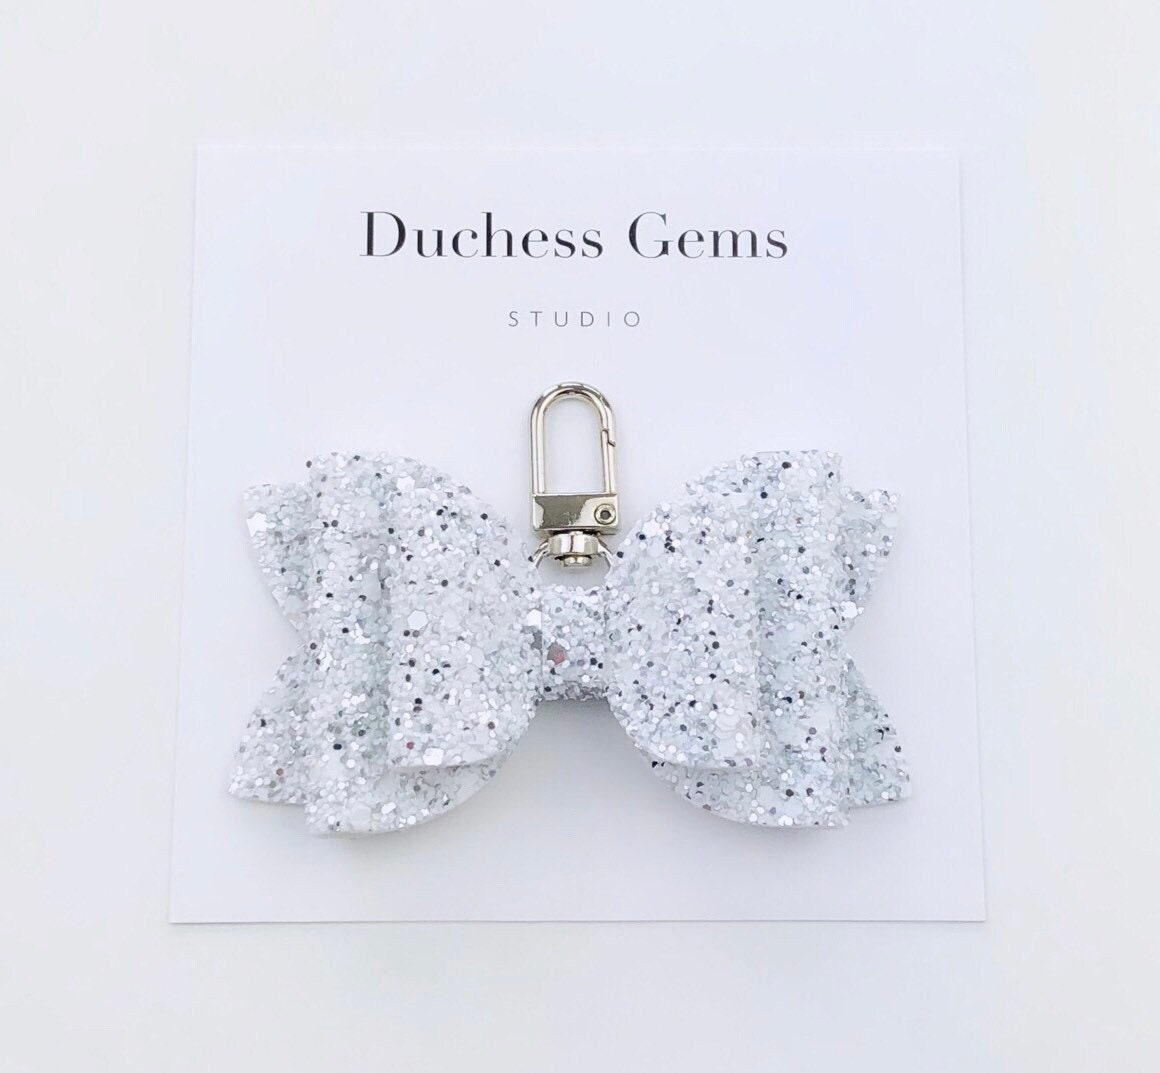 Weiß Und Silber Chunky Glitzer Schleife Tasche Charm, Windeltasche Charm von DuchessGemsStudio